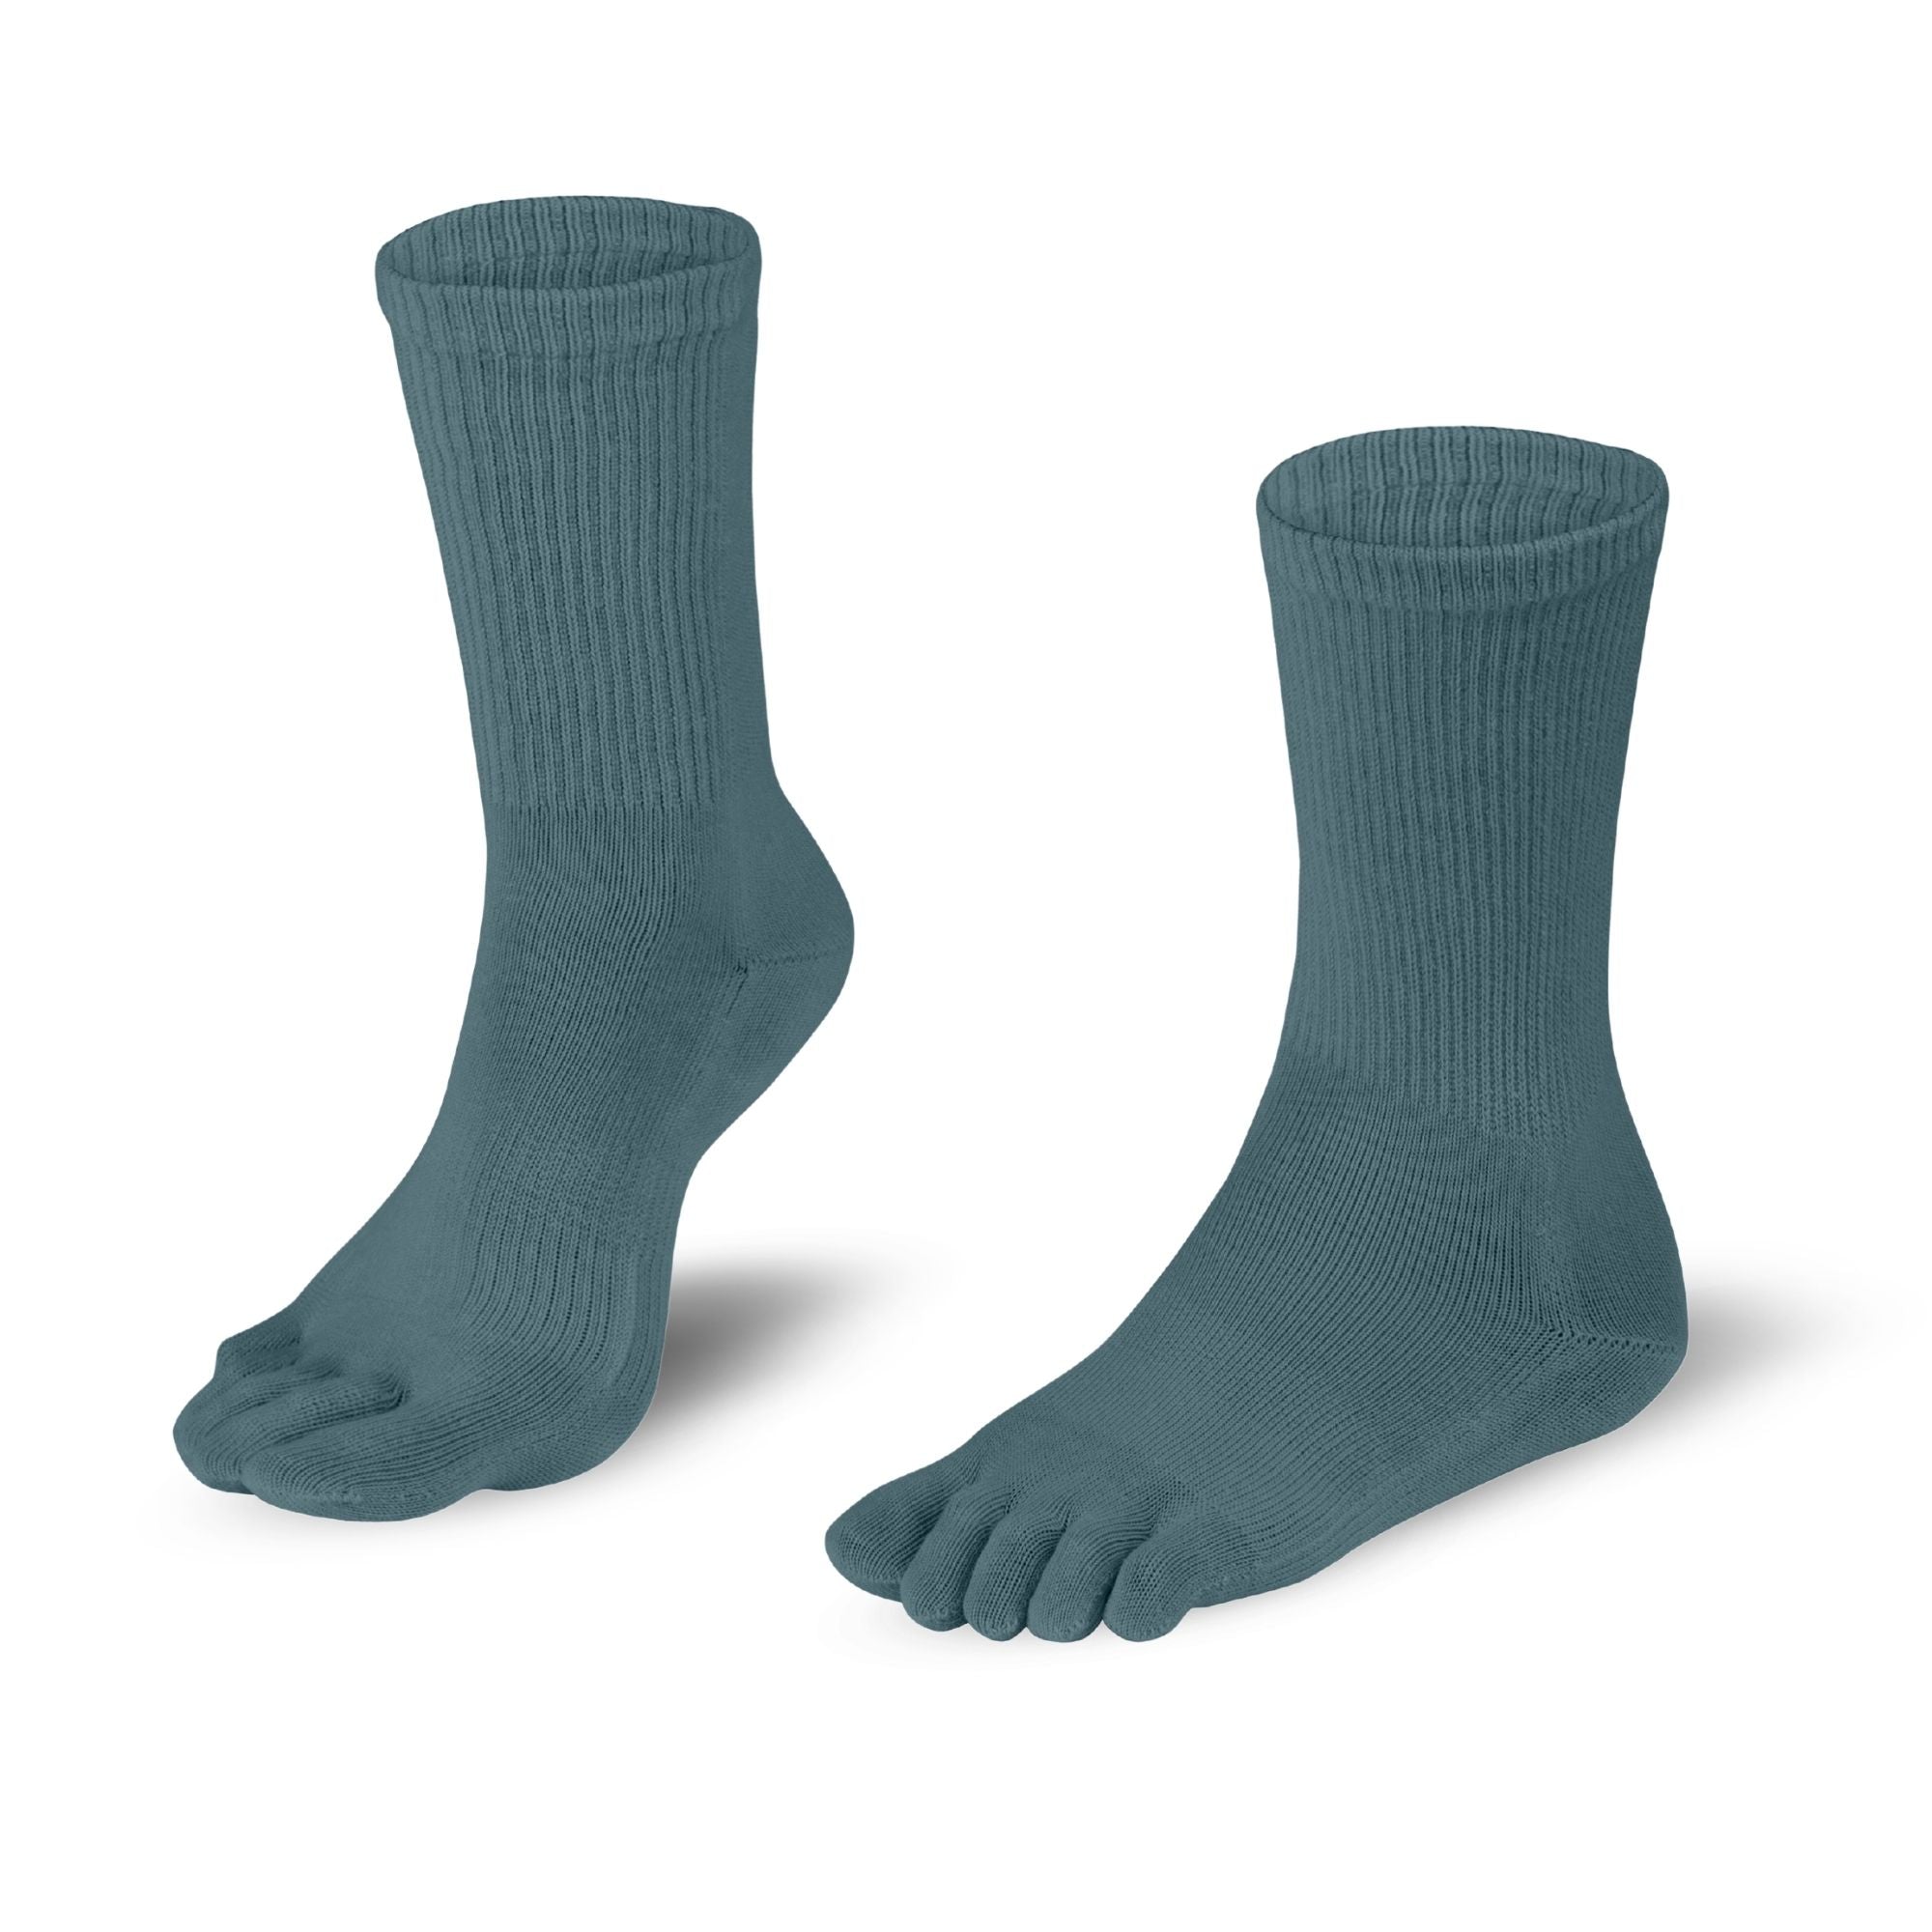 Dr. Foot Hallux Valgus chaussettes à orteils de Knitido en gris-bleu